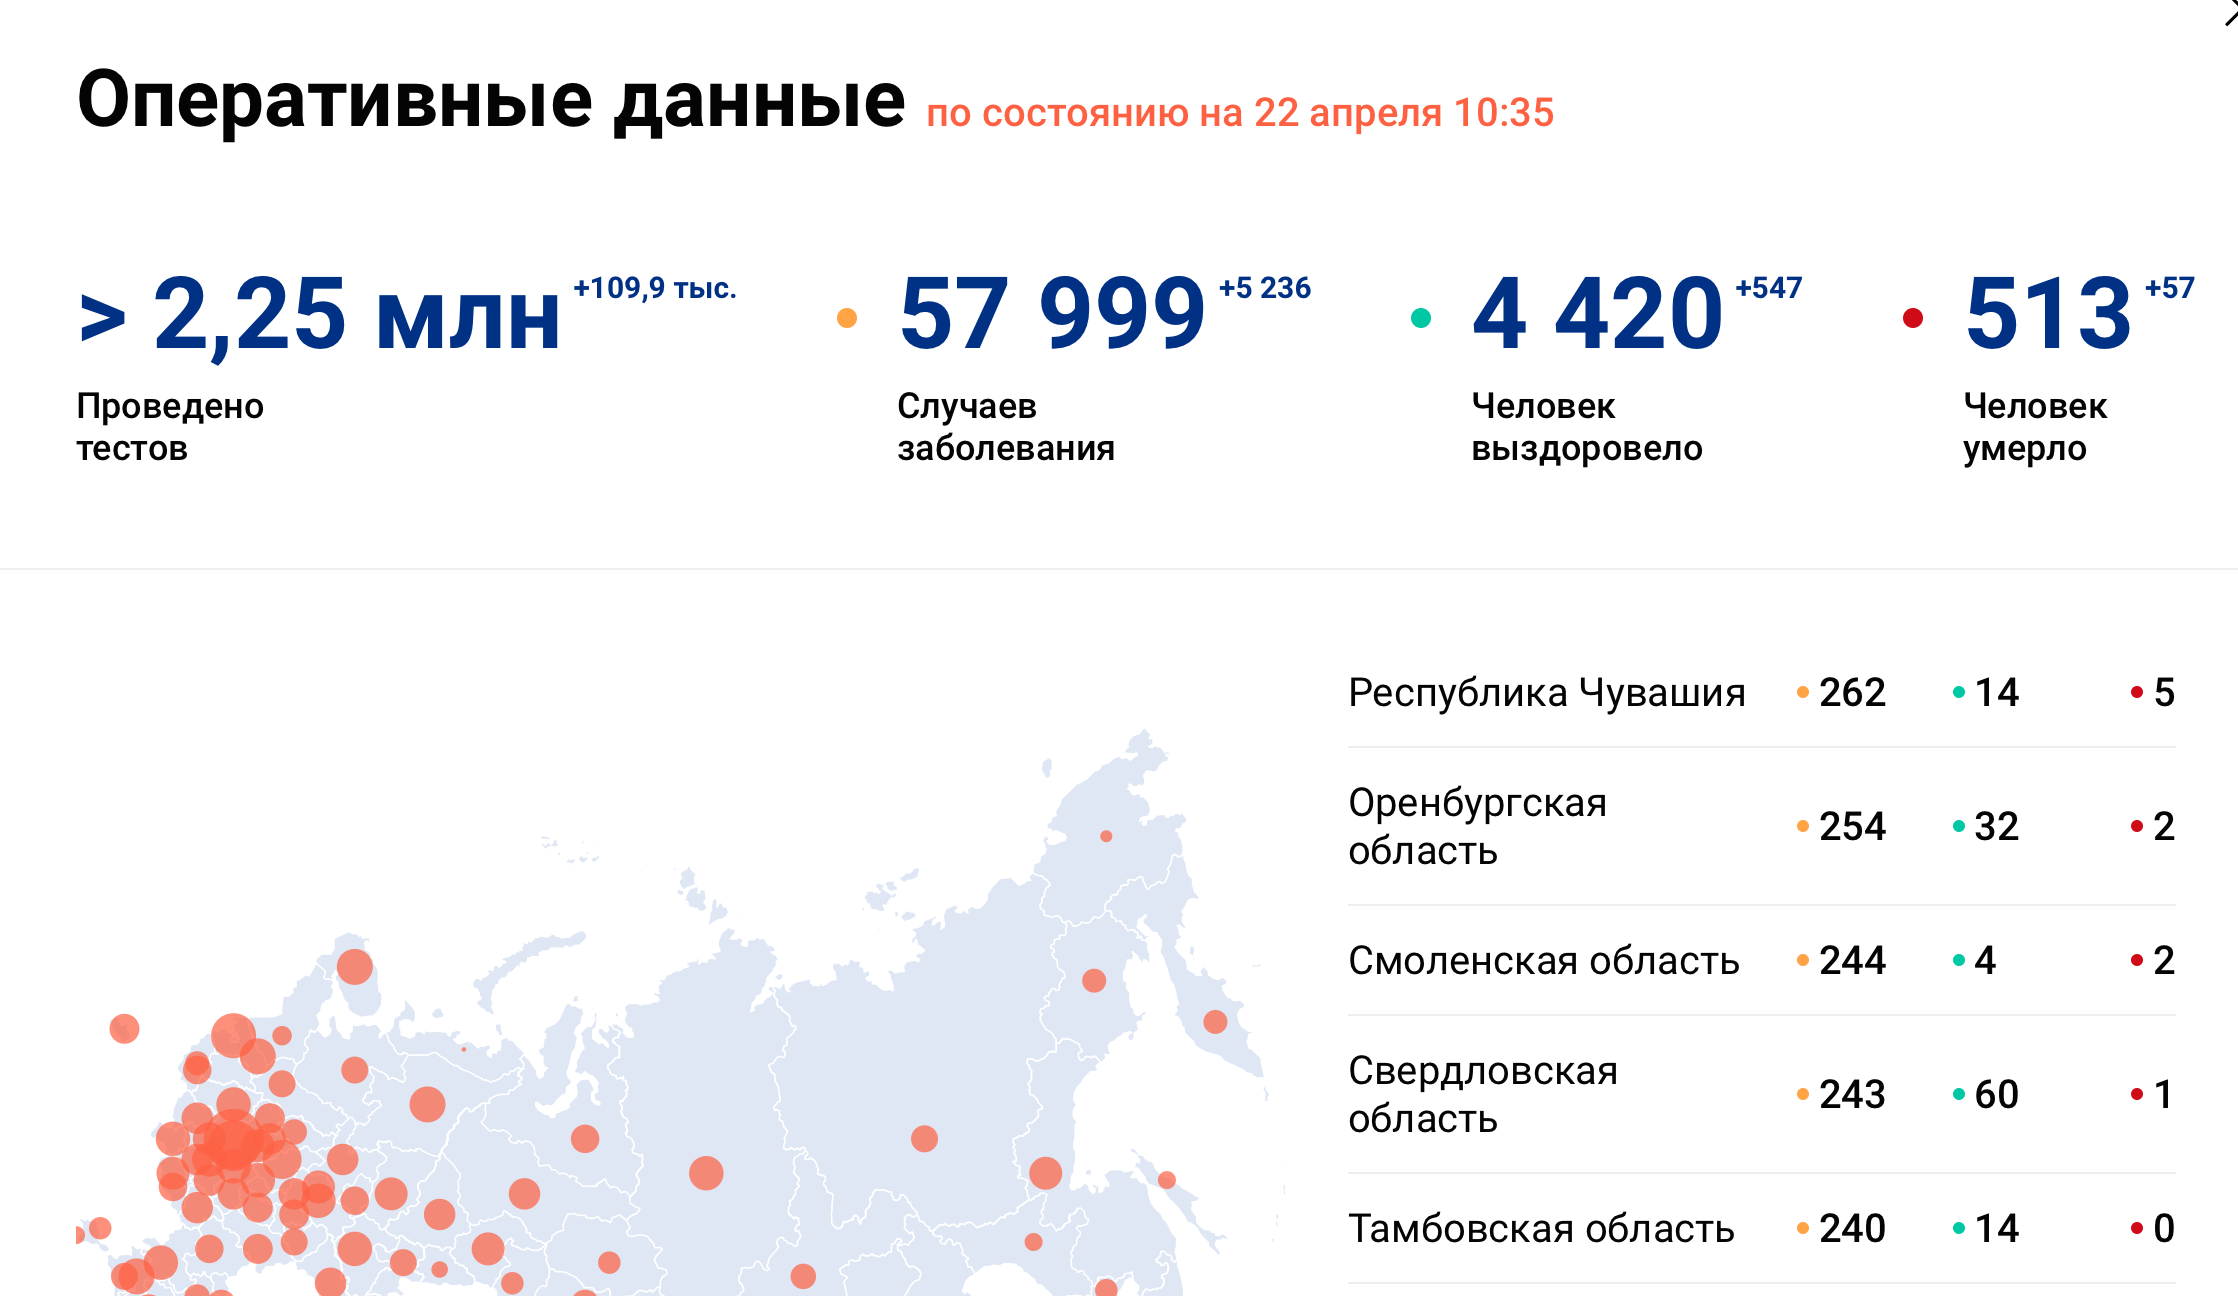 Сколько людей погибает в день в москве